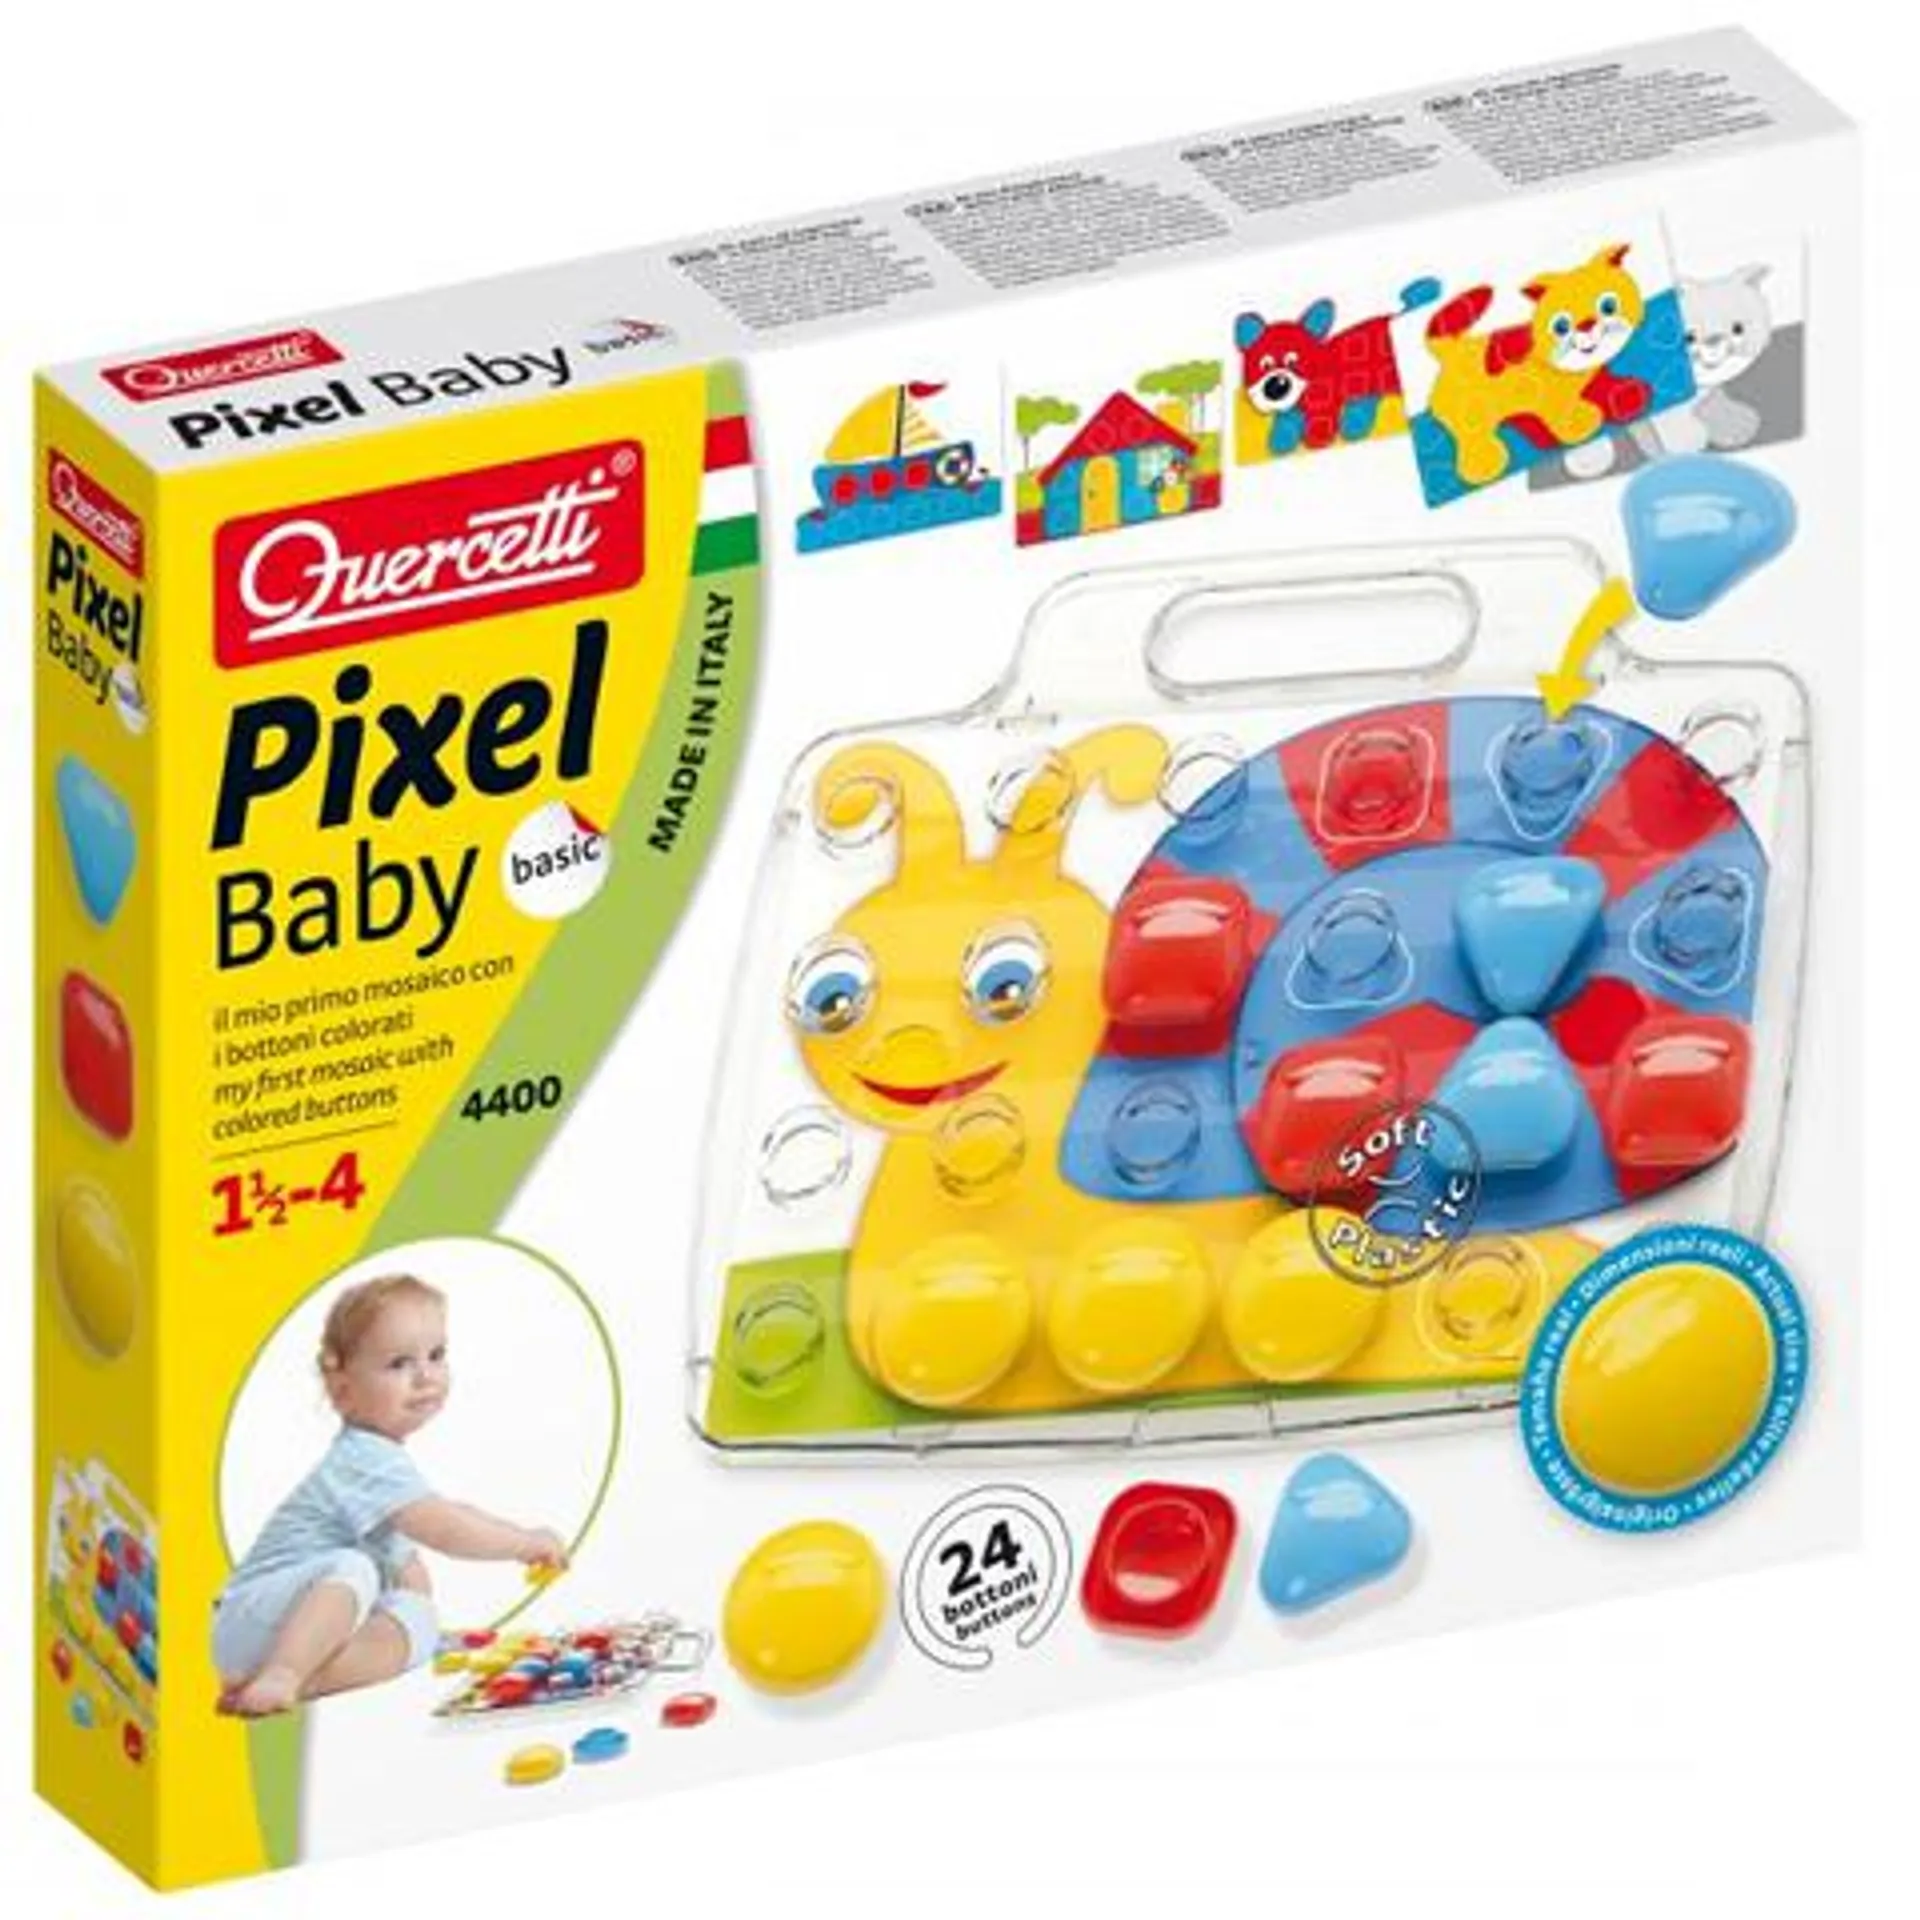 Quercetti: Pixel Baby Basic óriás pötyi